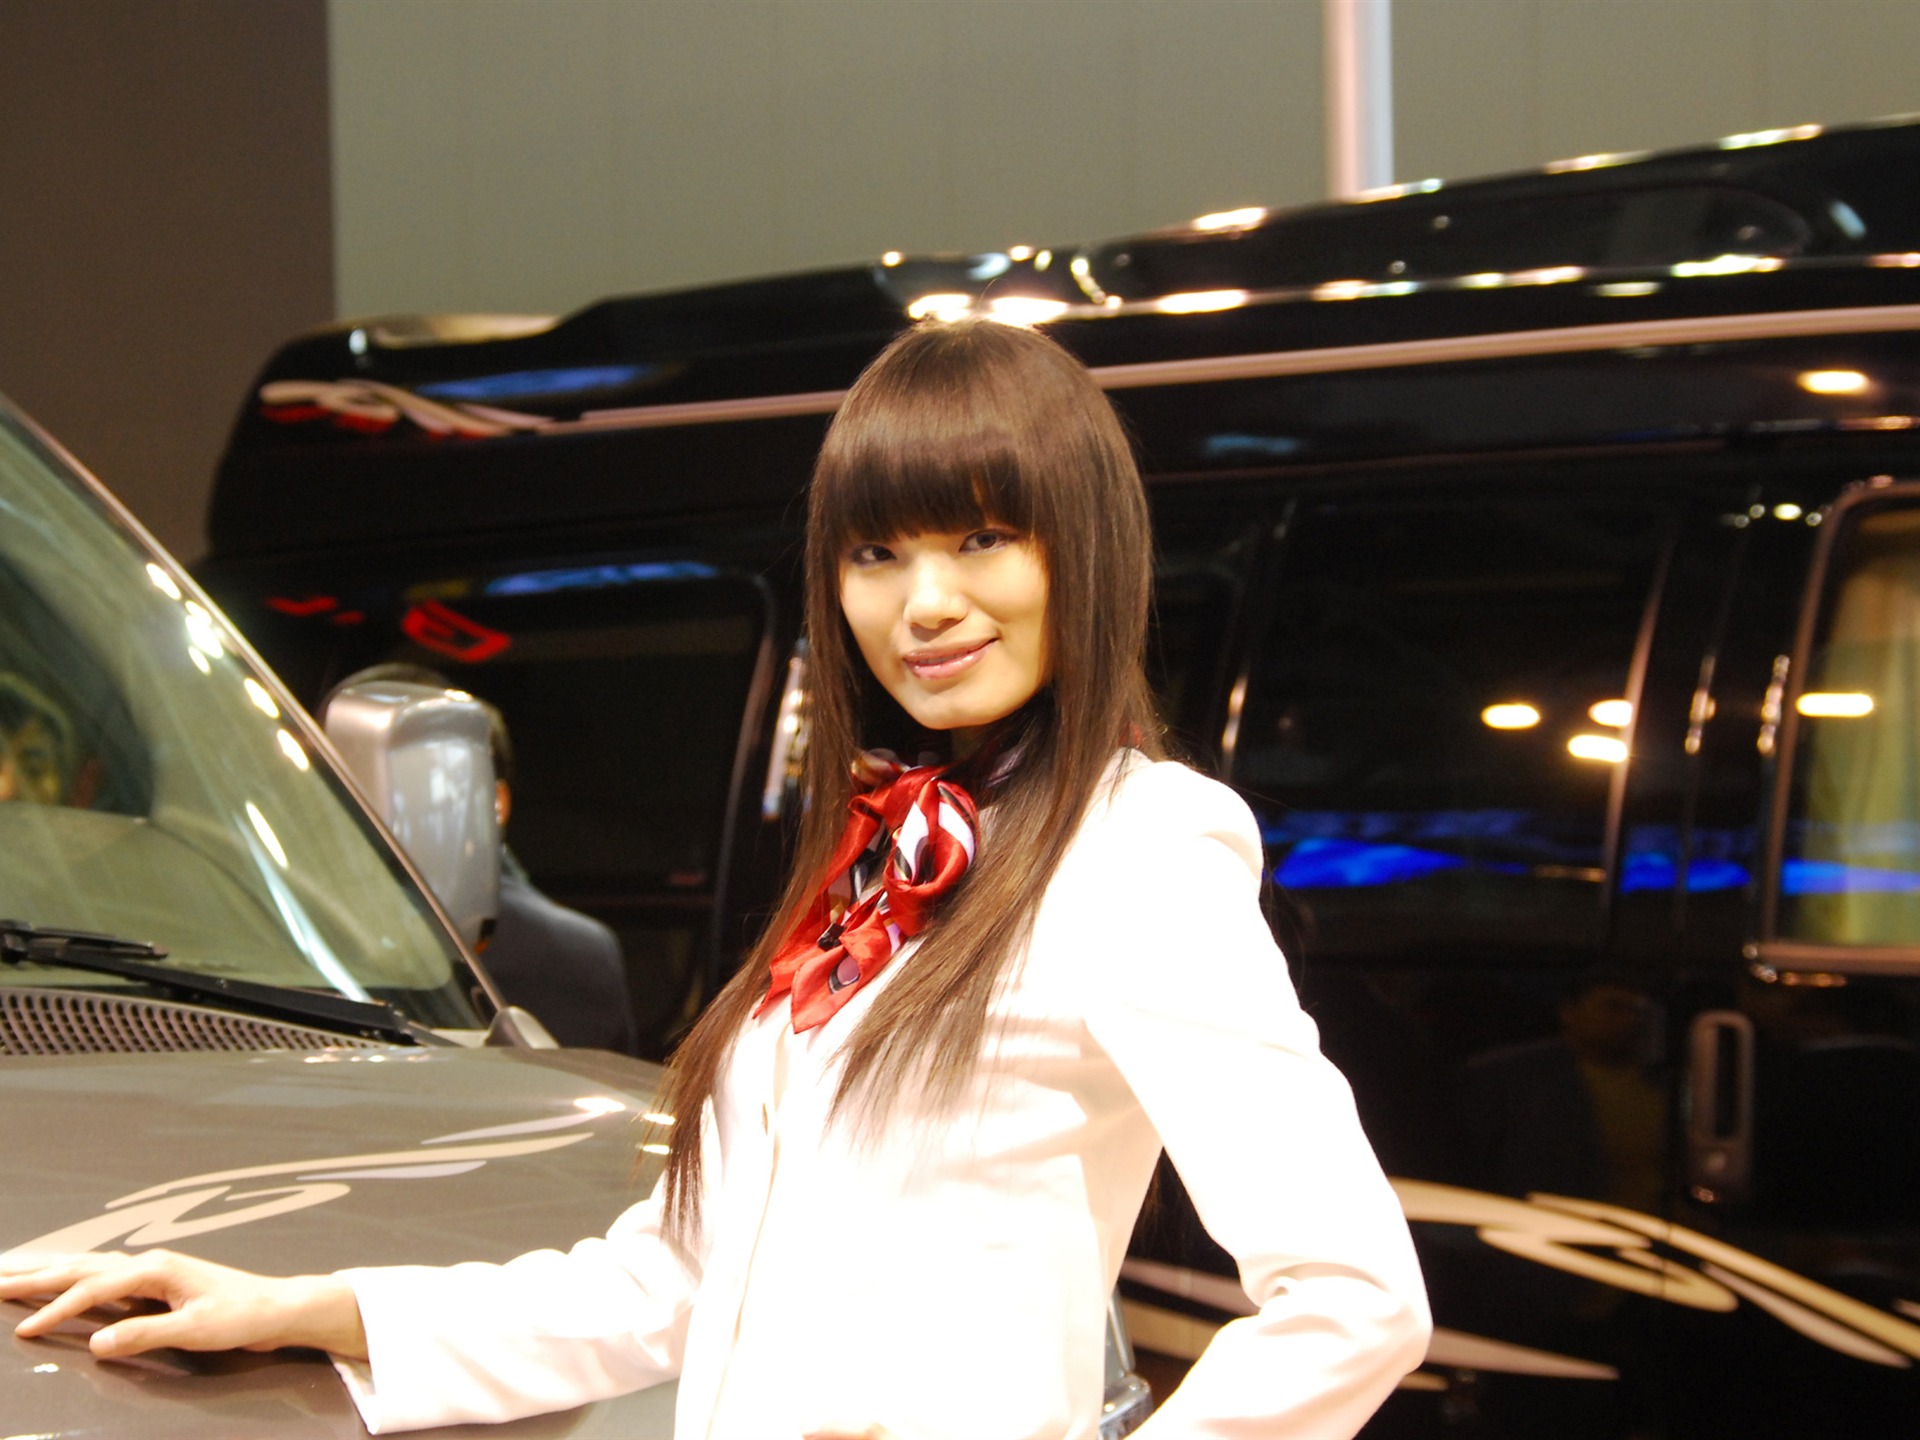 2010 Beijing International Auto Show (2) (z321x123 works) #21 - 1920x1440